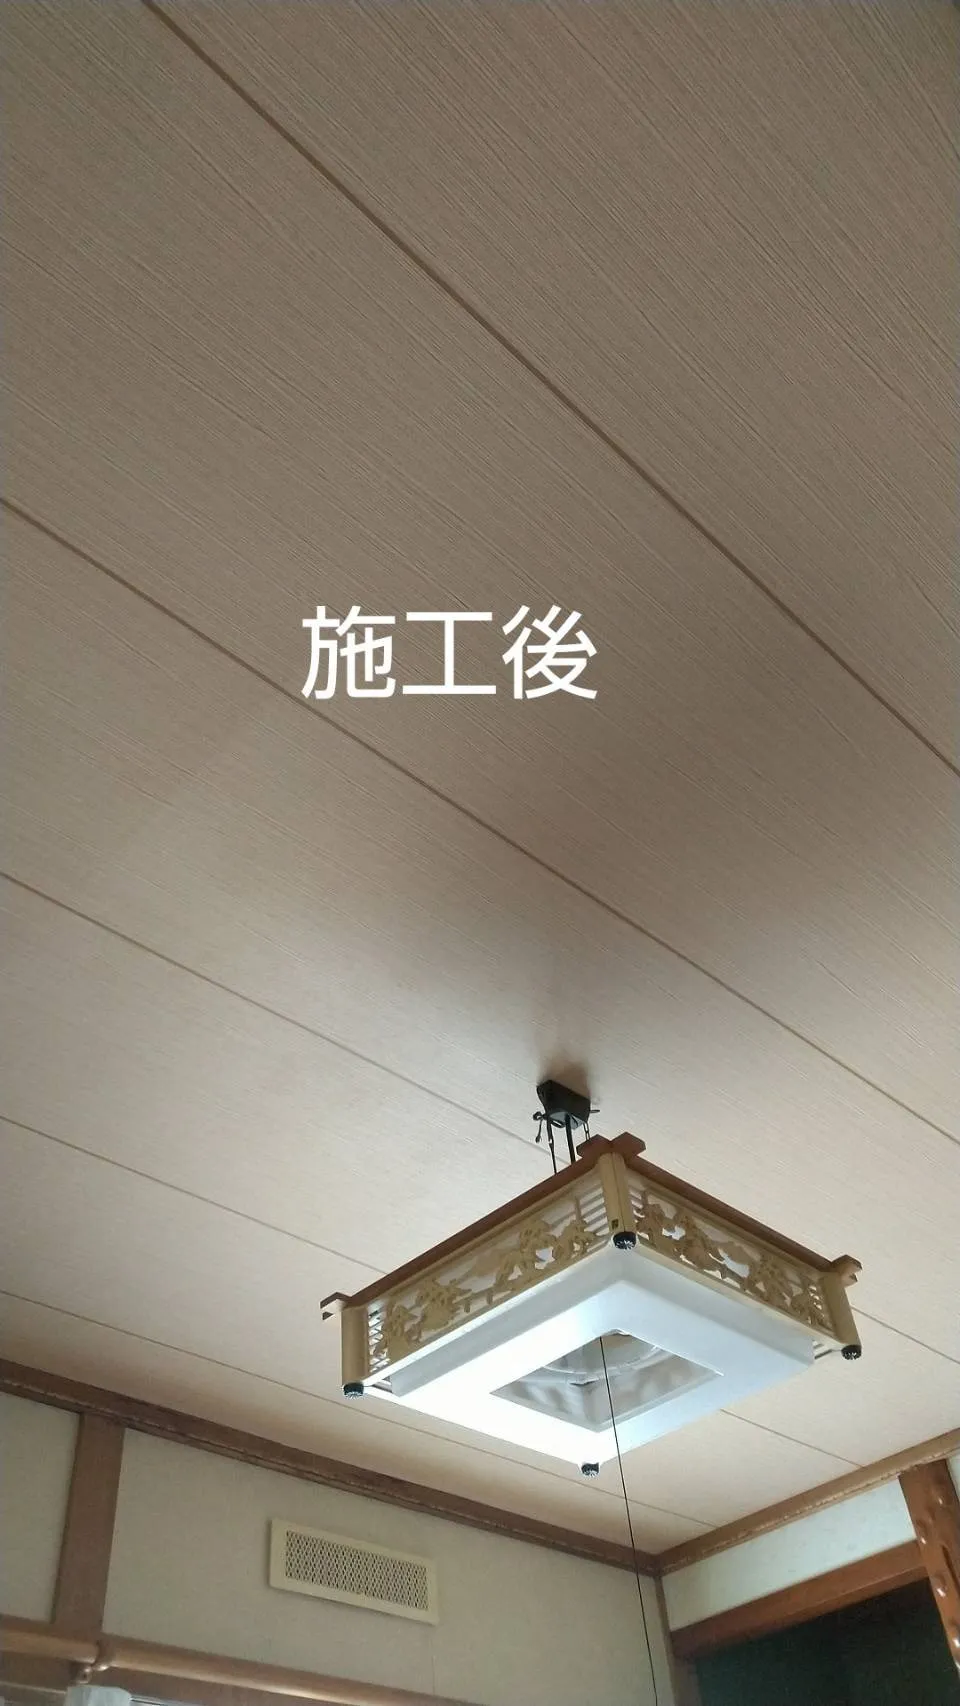 札幌市 北区 戸建て 天井 漏水復旧工事